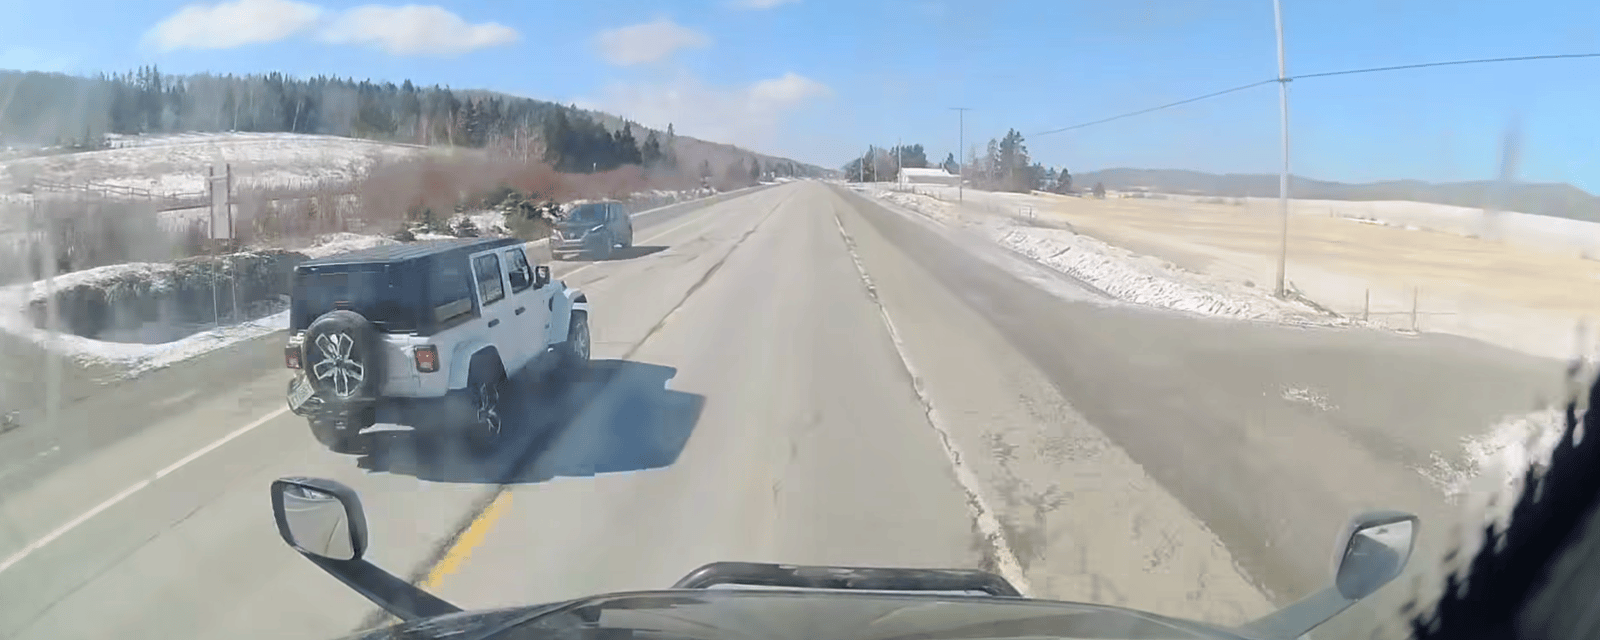 Un camionneur Québécois lance un important message suite à un grave accident évité de justesse